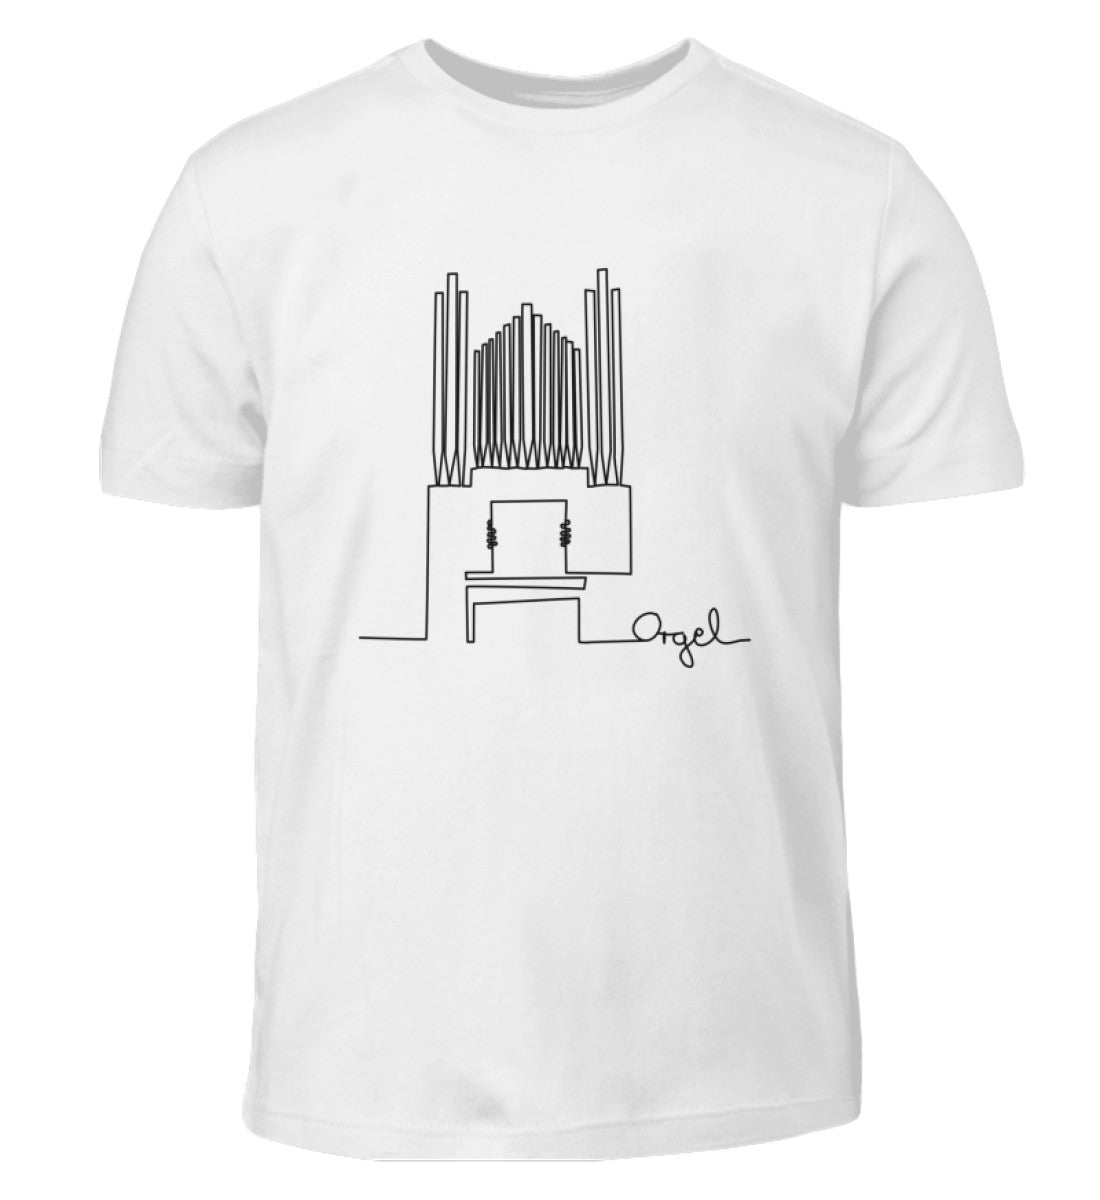 Orgel Kinder T-Shirt